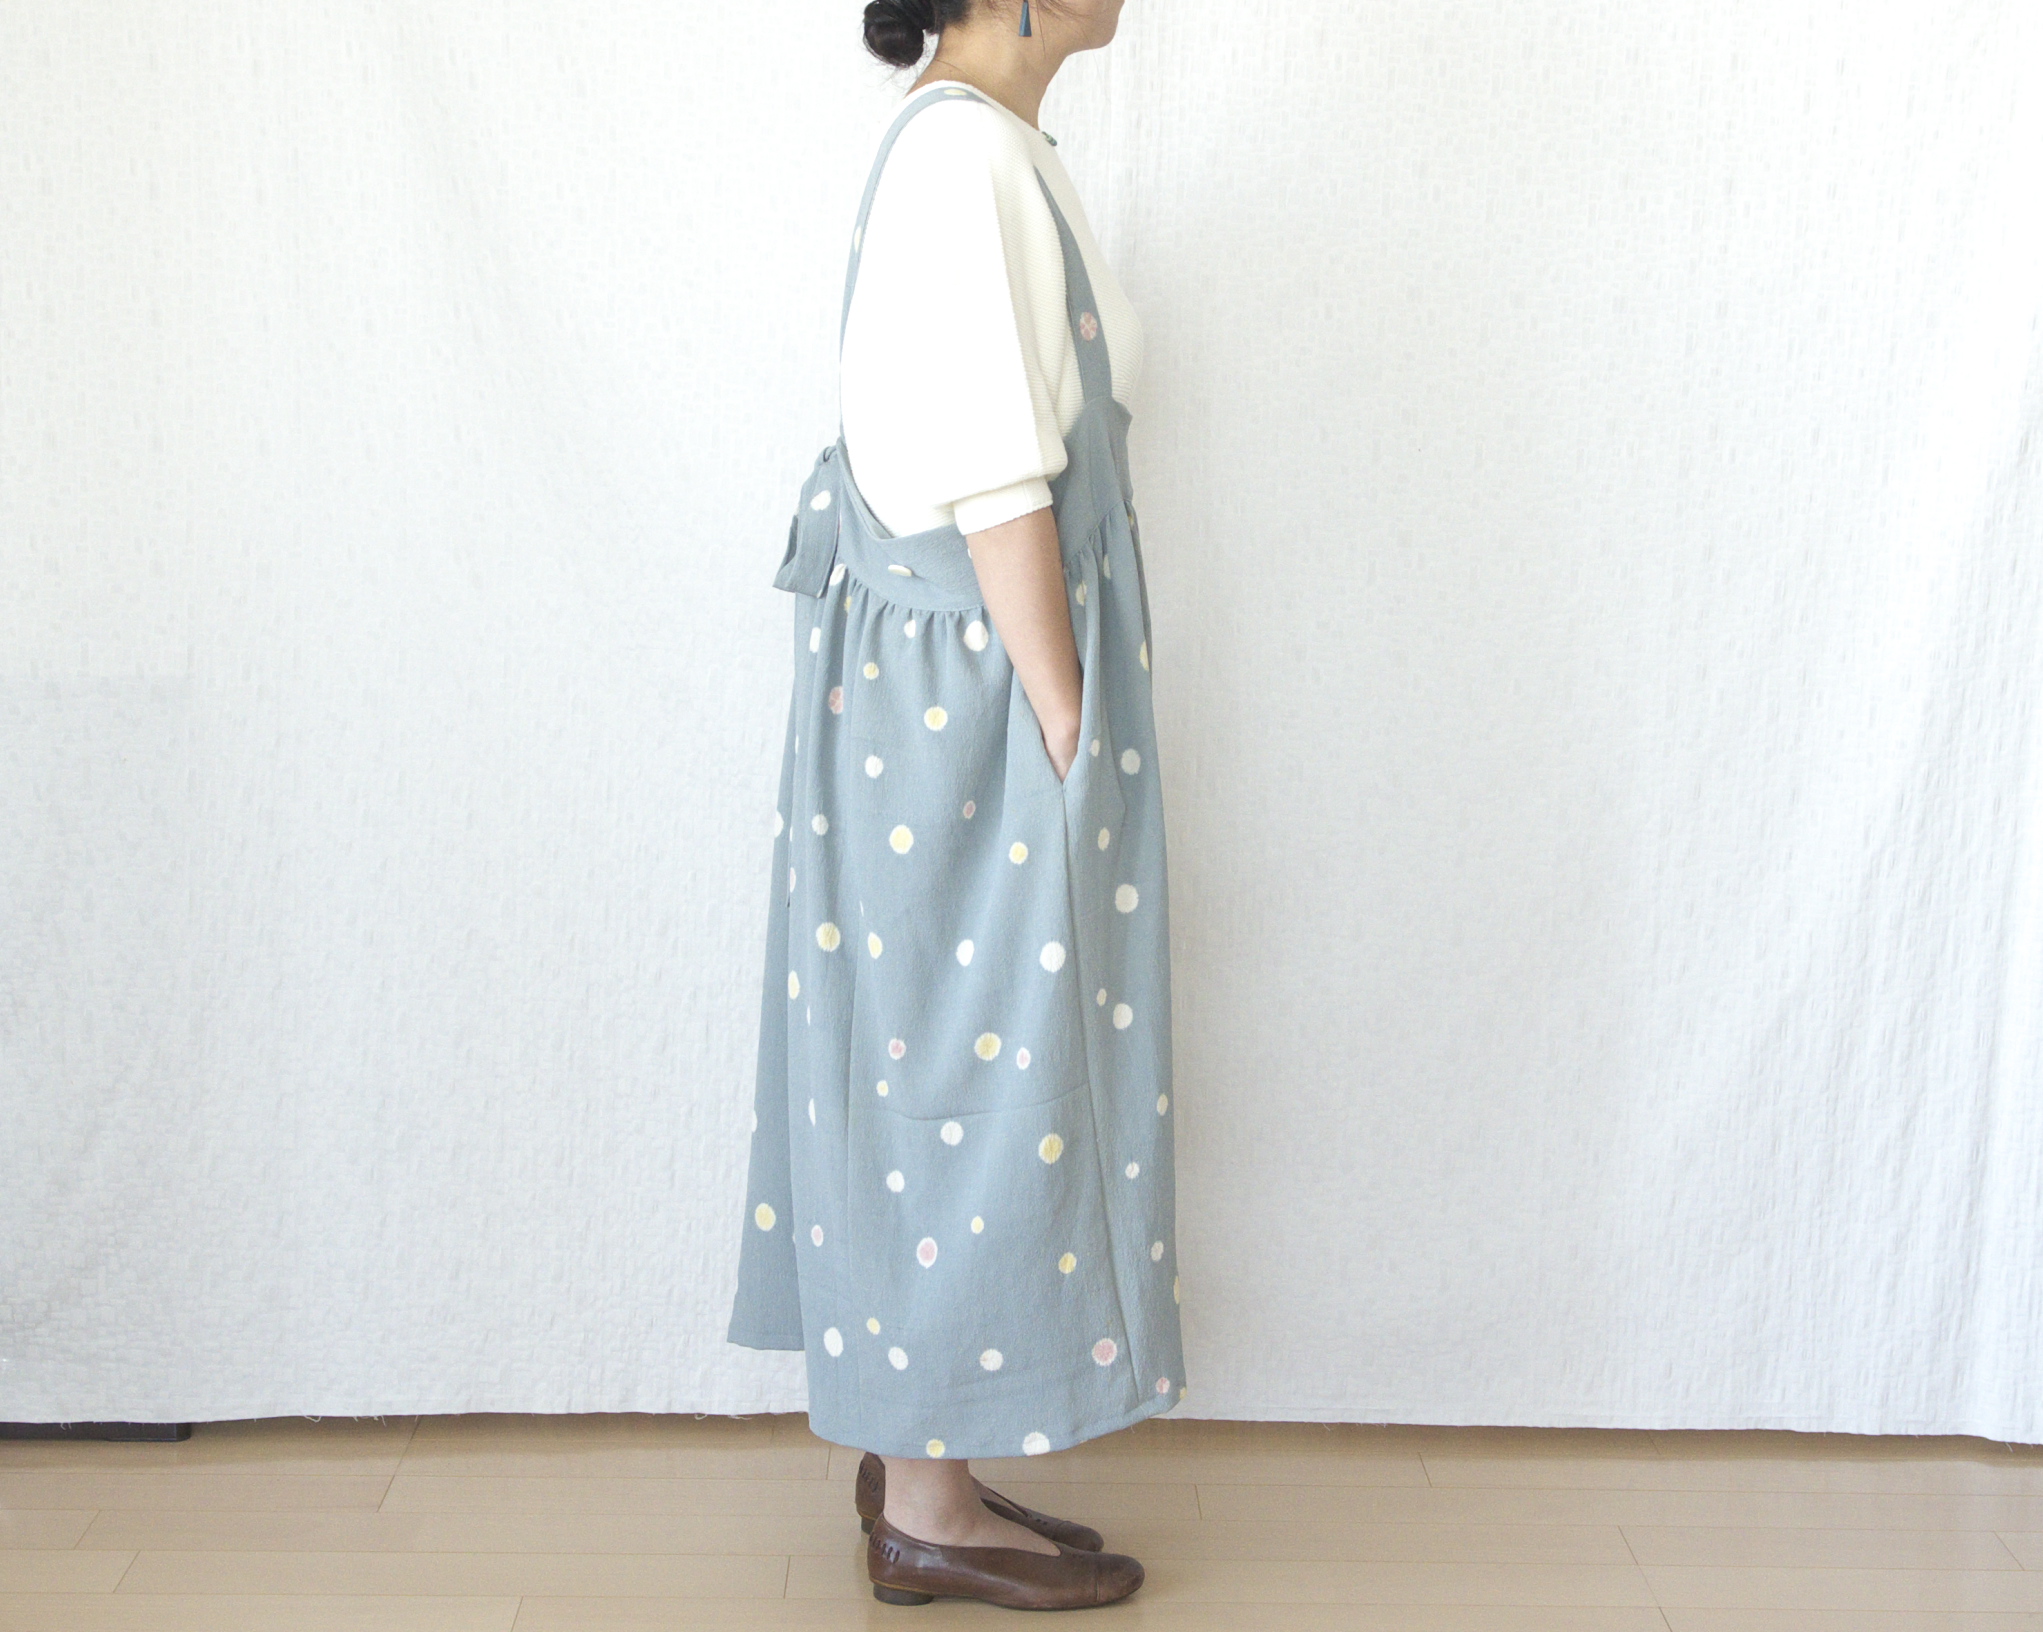 サロペットスカート Iichi ハンドメイド クラフト作品 手仕事品の通販